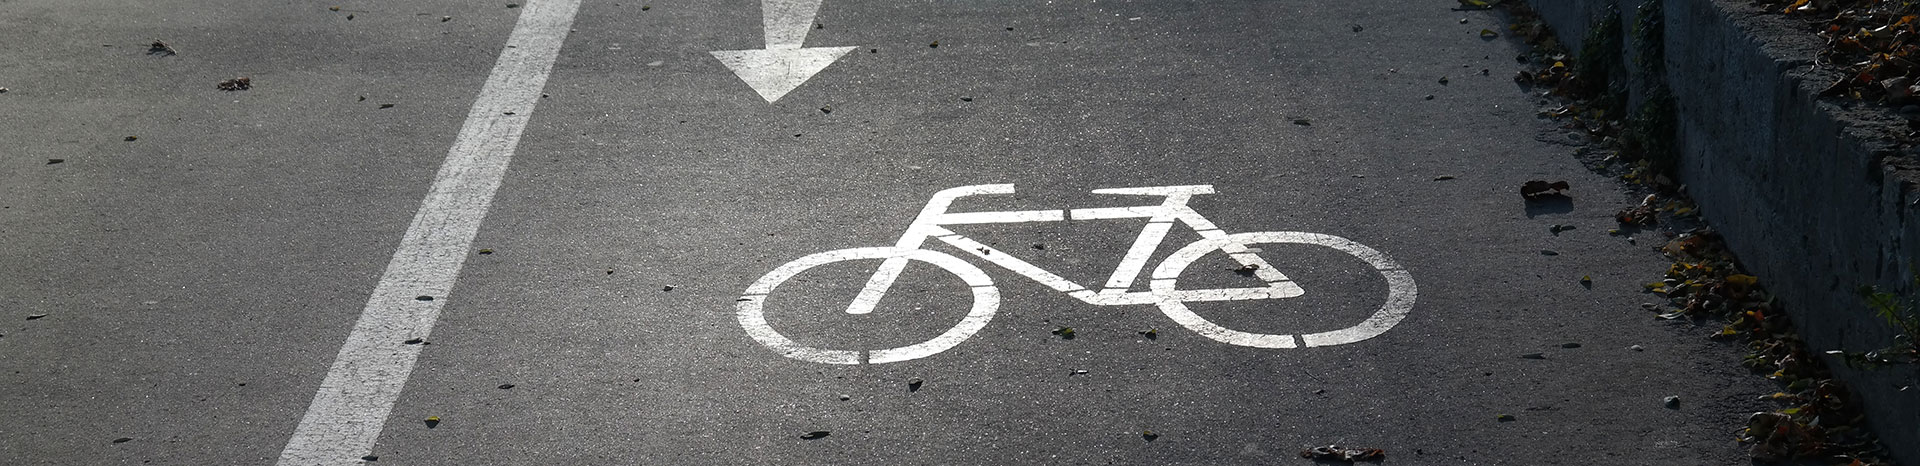 Noord-Holland investeert miljoenen in fietsveiligheid | LetselPro